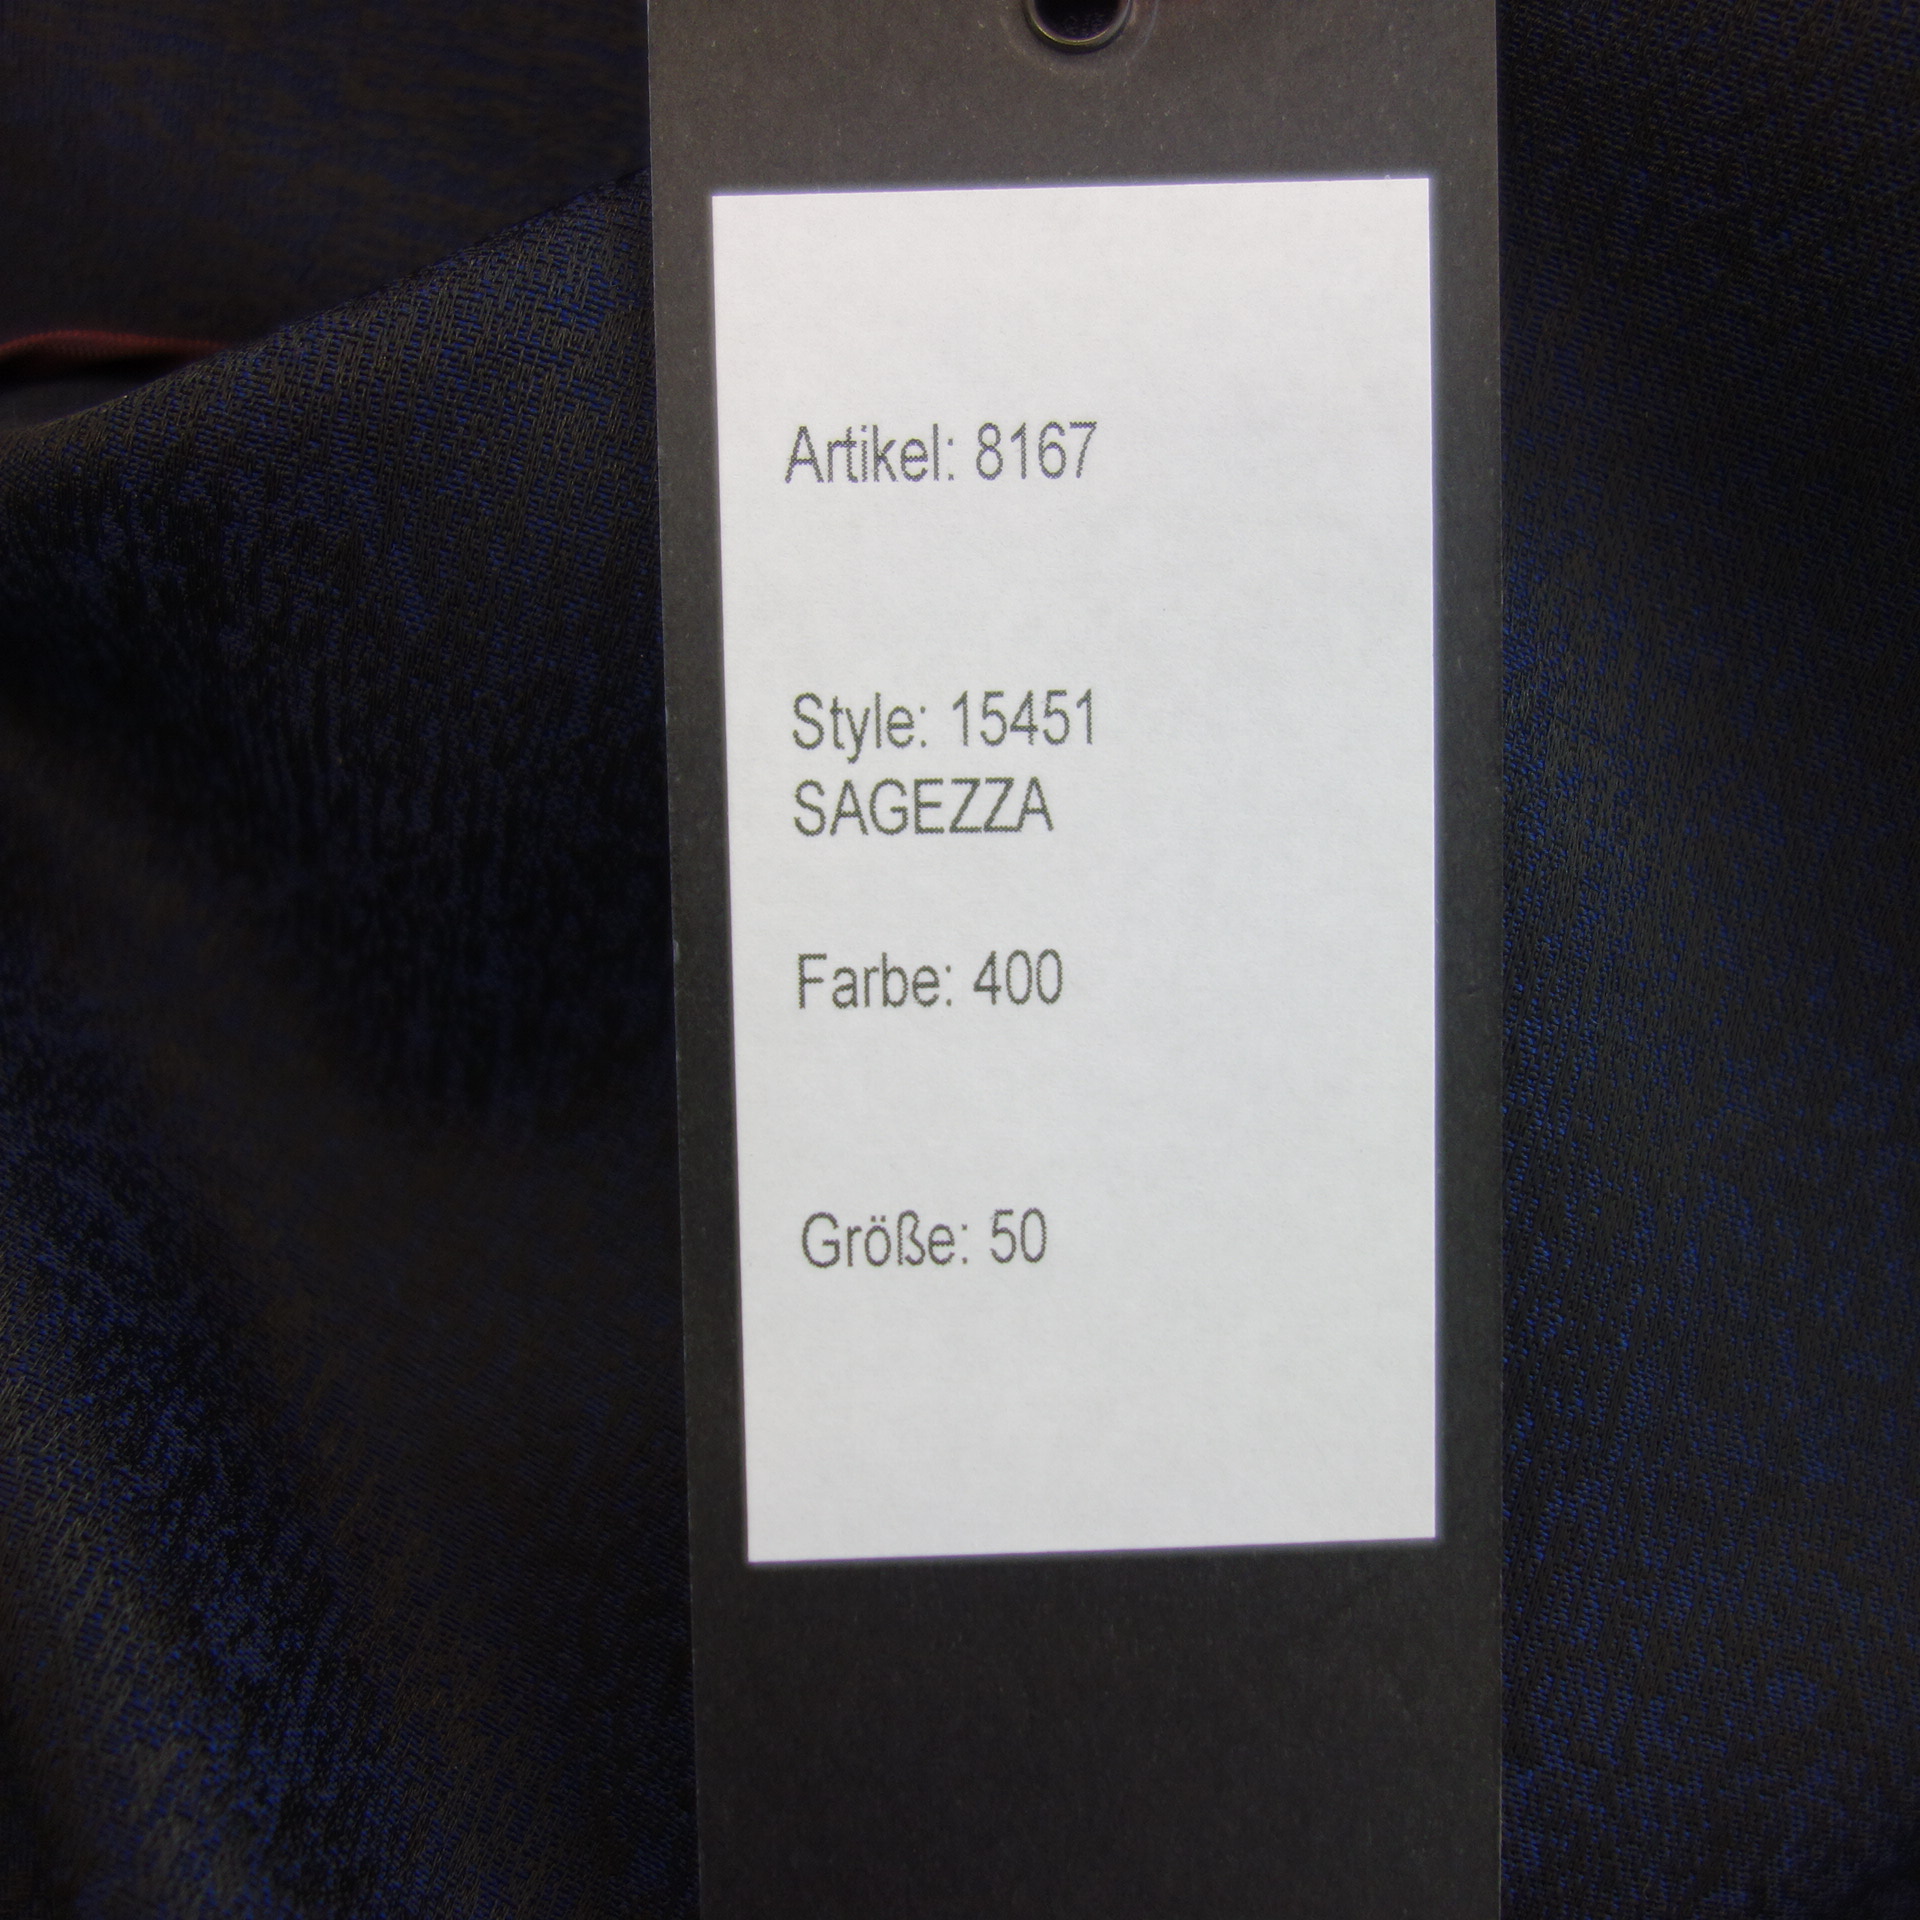 HARTWICH Herren Jacke Sakko Jacket Größe 50 Modell Sagezza Grau Elegant